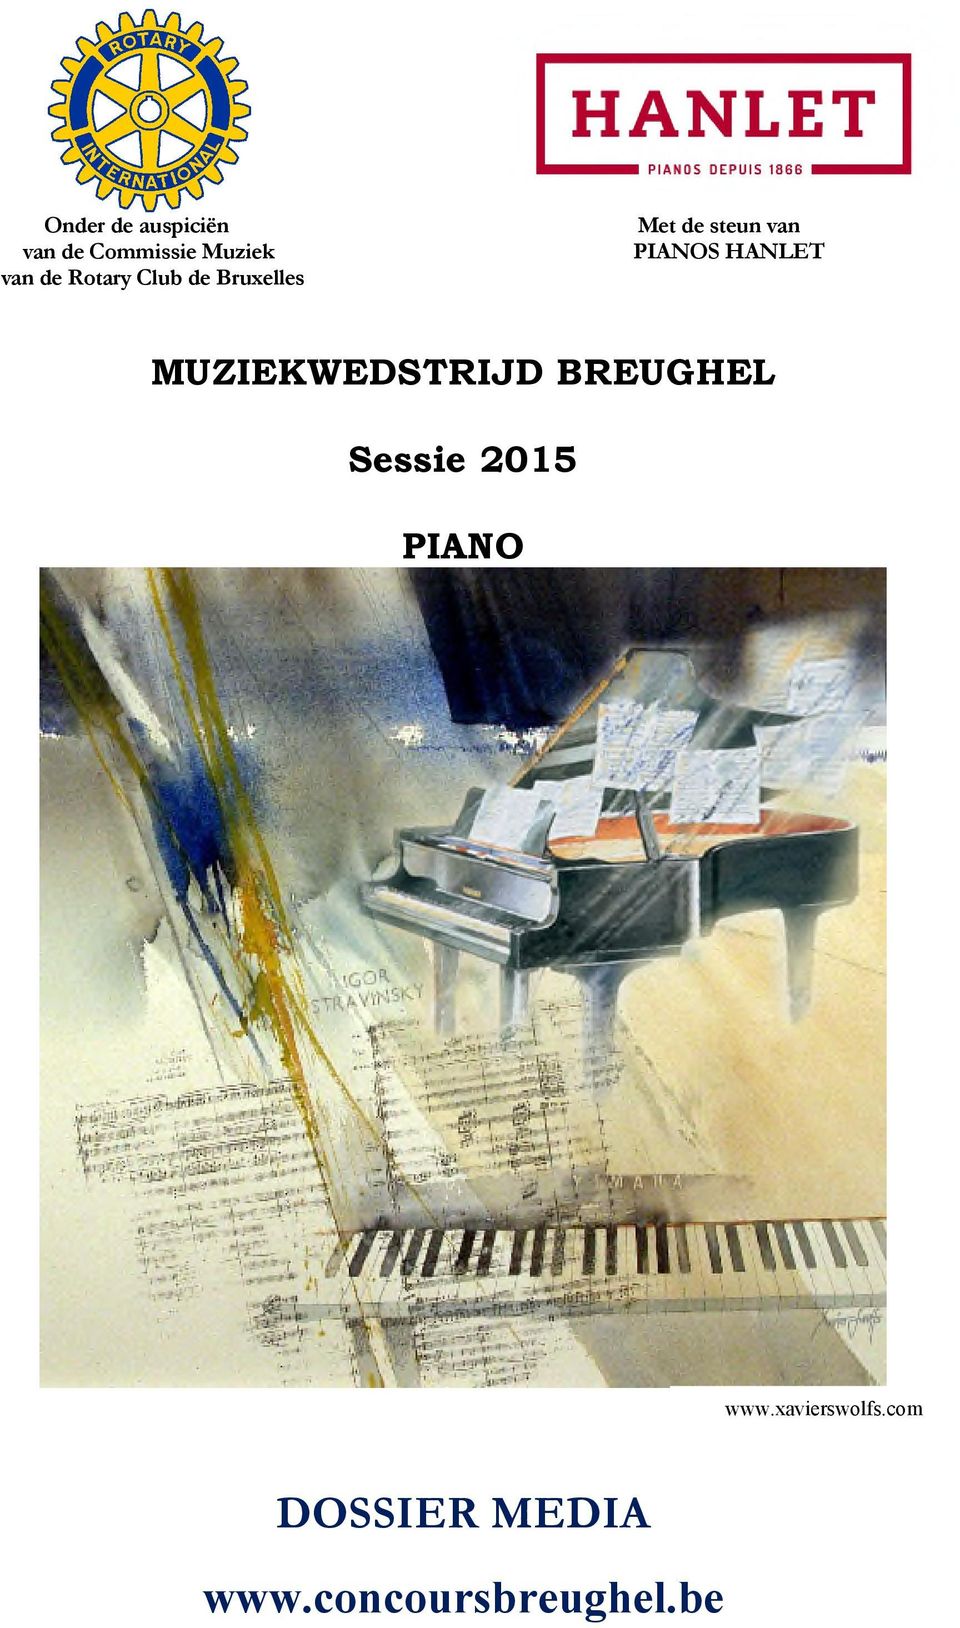 HANLET MUZIEKWEDSTRIJD BREUGHEL Sessie 2015 PIANO